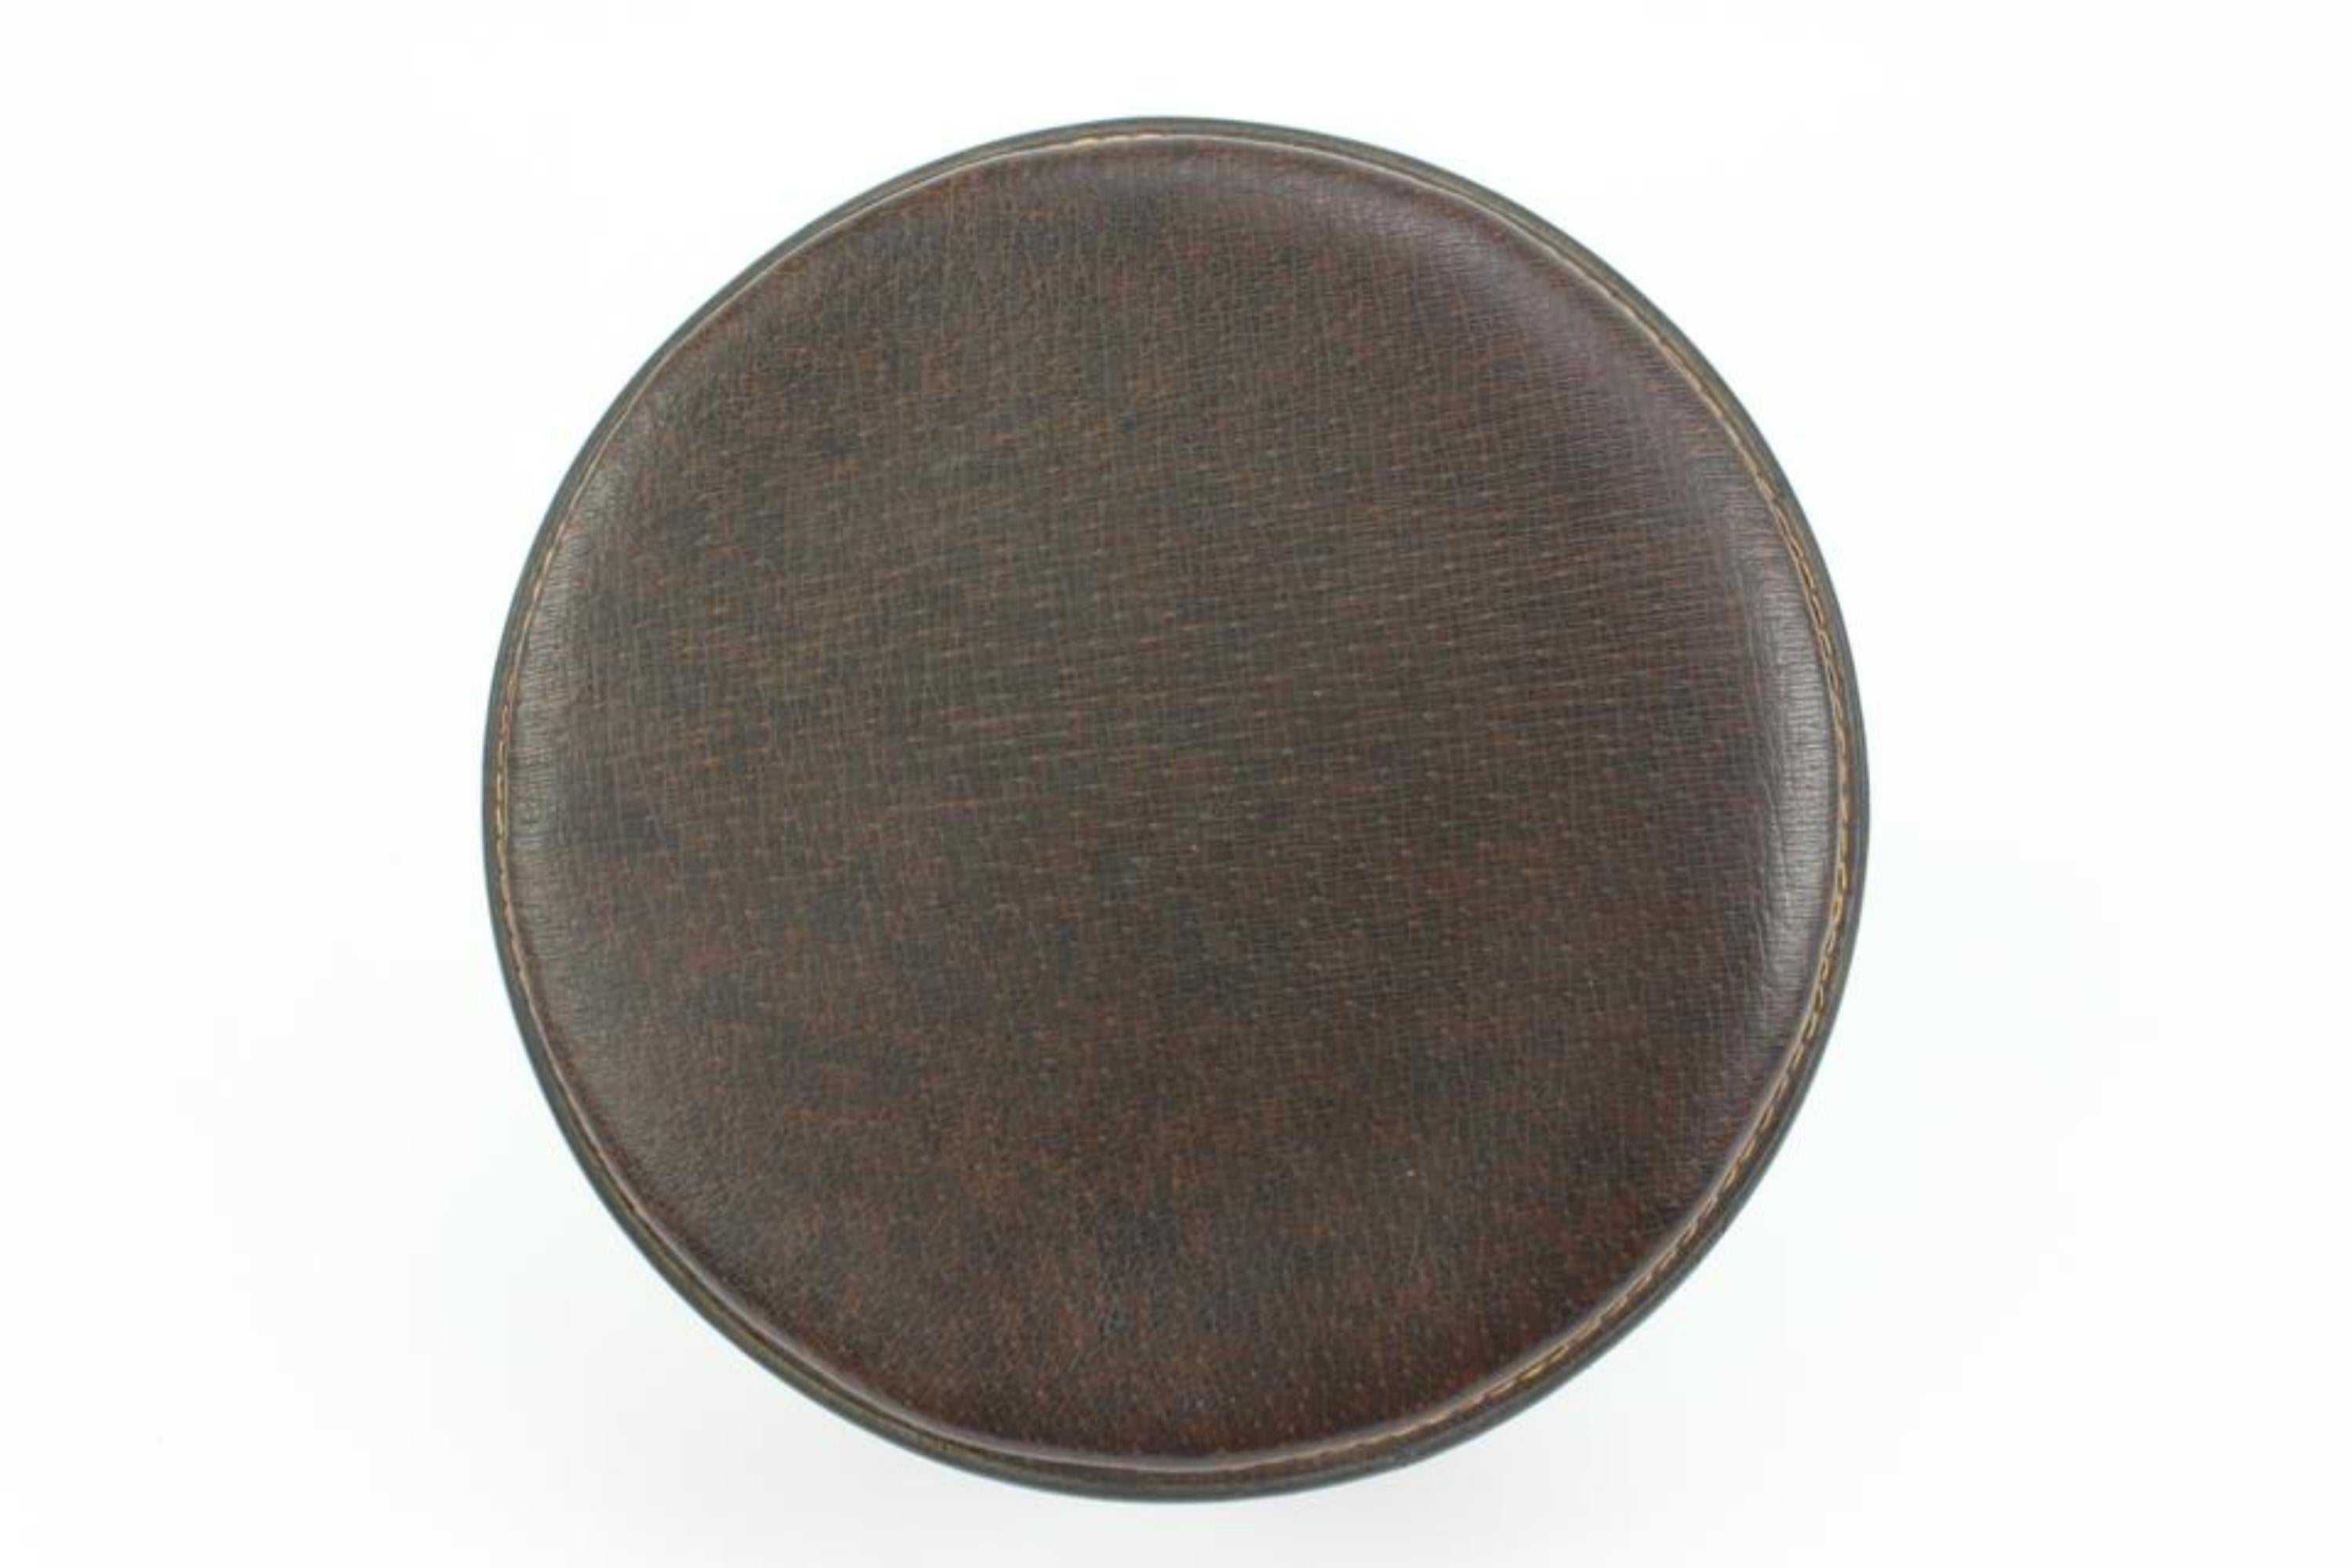 Gucci Ultra Rare Brown Leather Web Round Box Case Jar Boite 71g411s For Sale 1